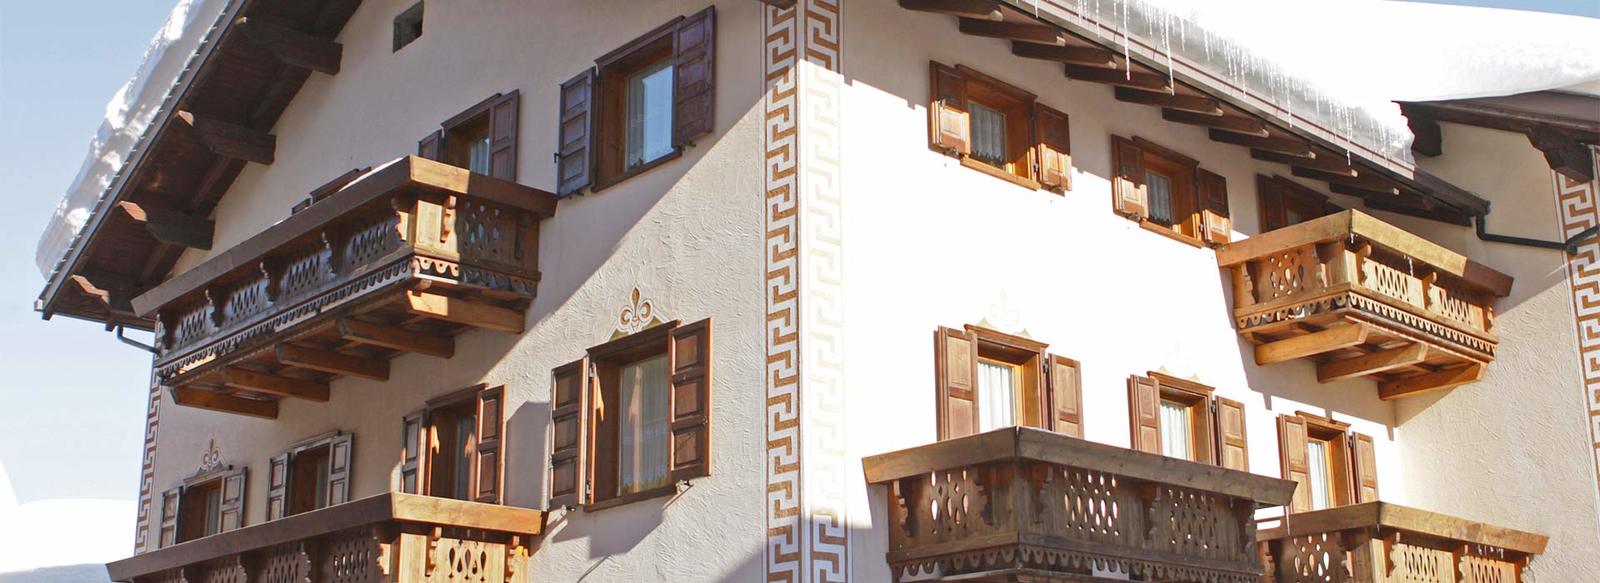 Confortevoli appartamenti nell'incanto dell'Alta Valtellina